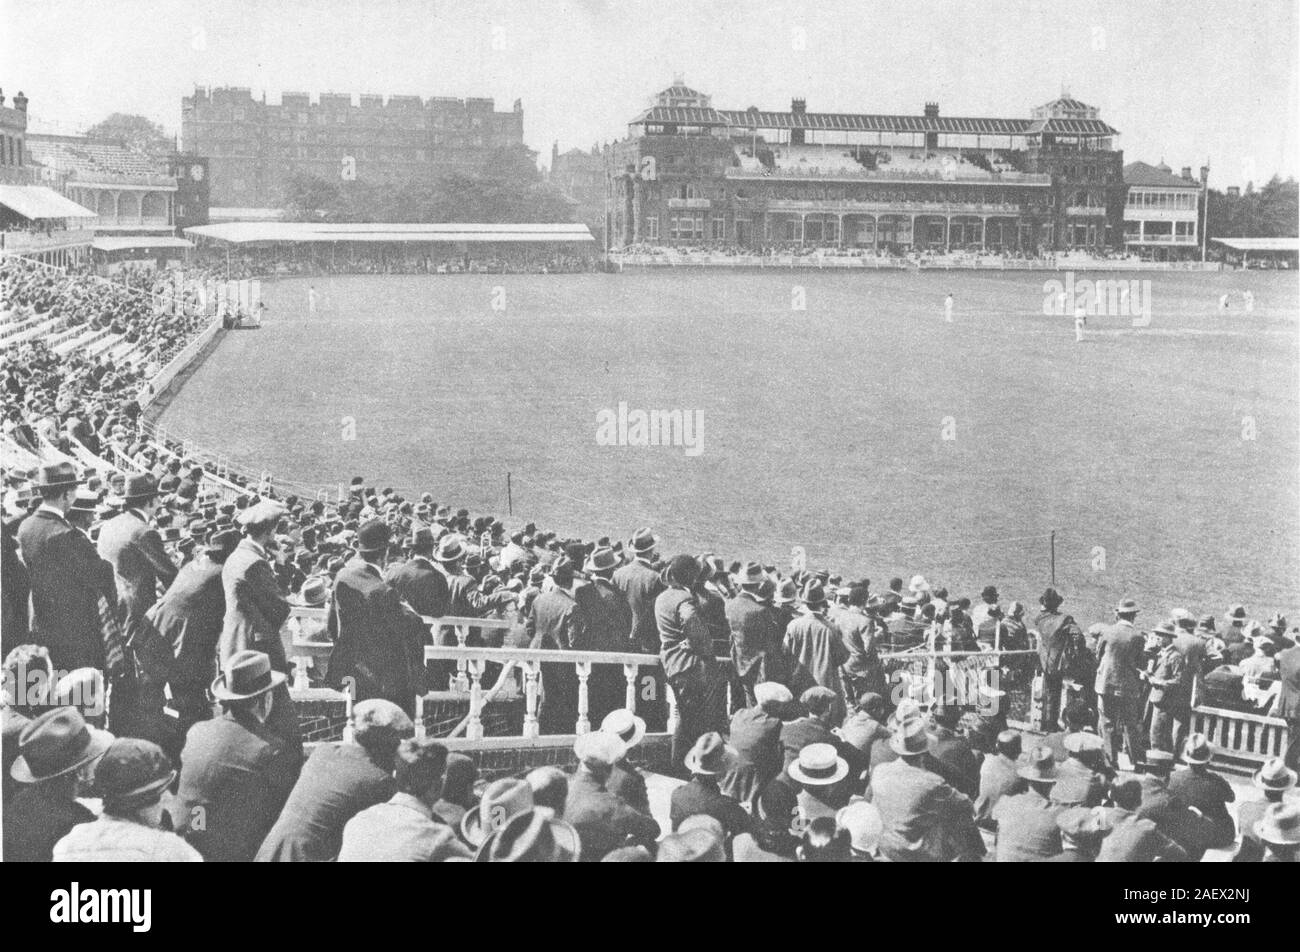 Londres. Vers Pavilion mound stand au monde- célèbre Lords. Match de cricket 1926 Banque D'Images